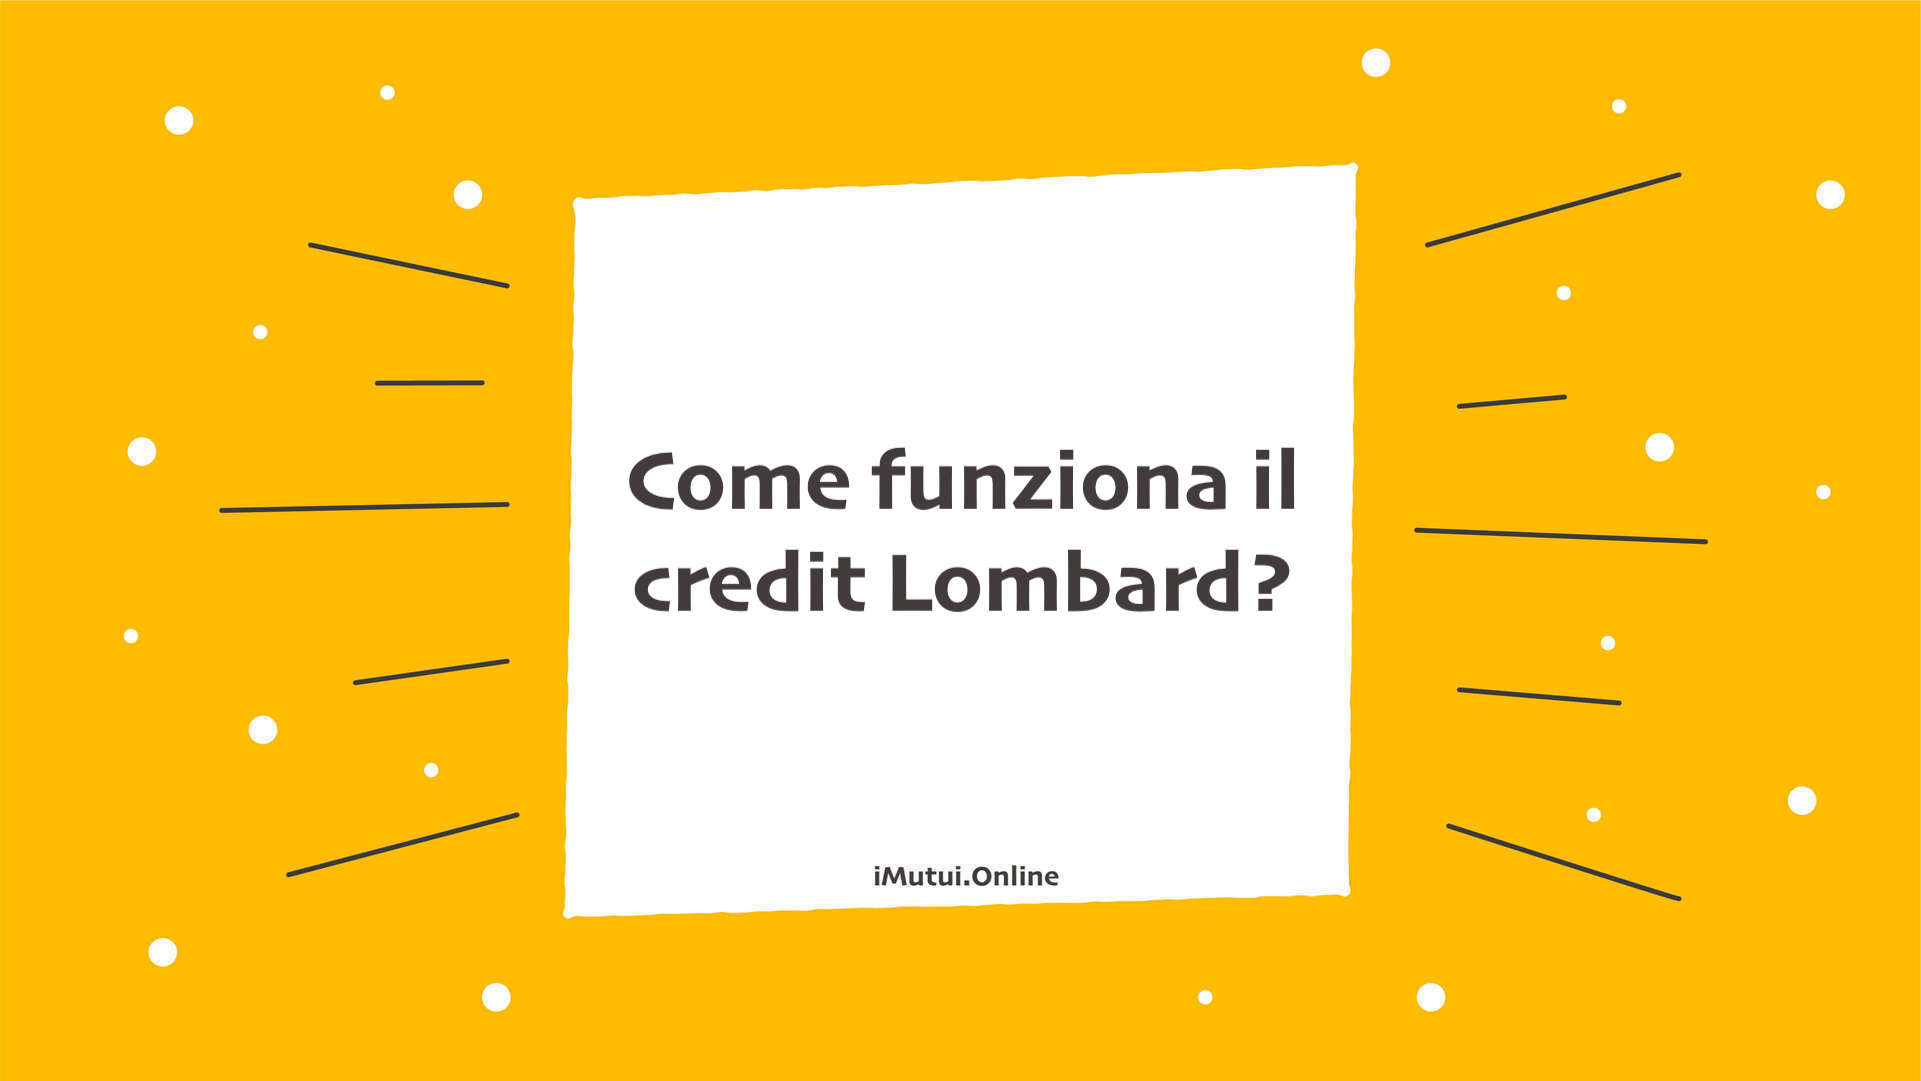 Come funziona il credit Lombard?